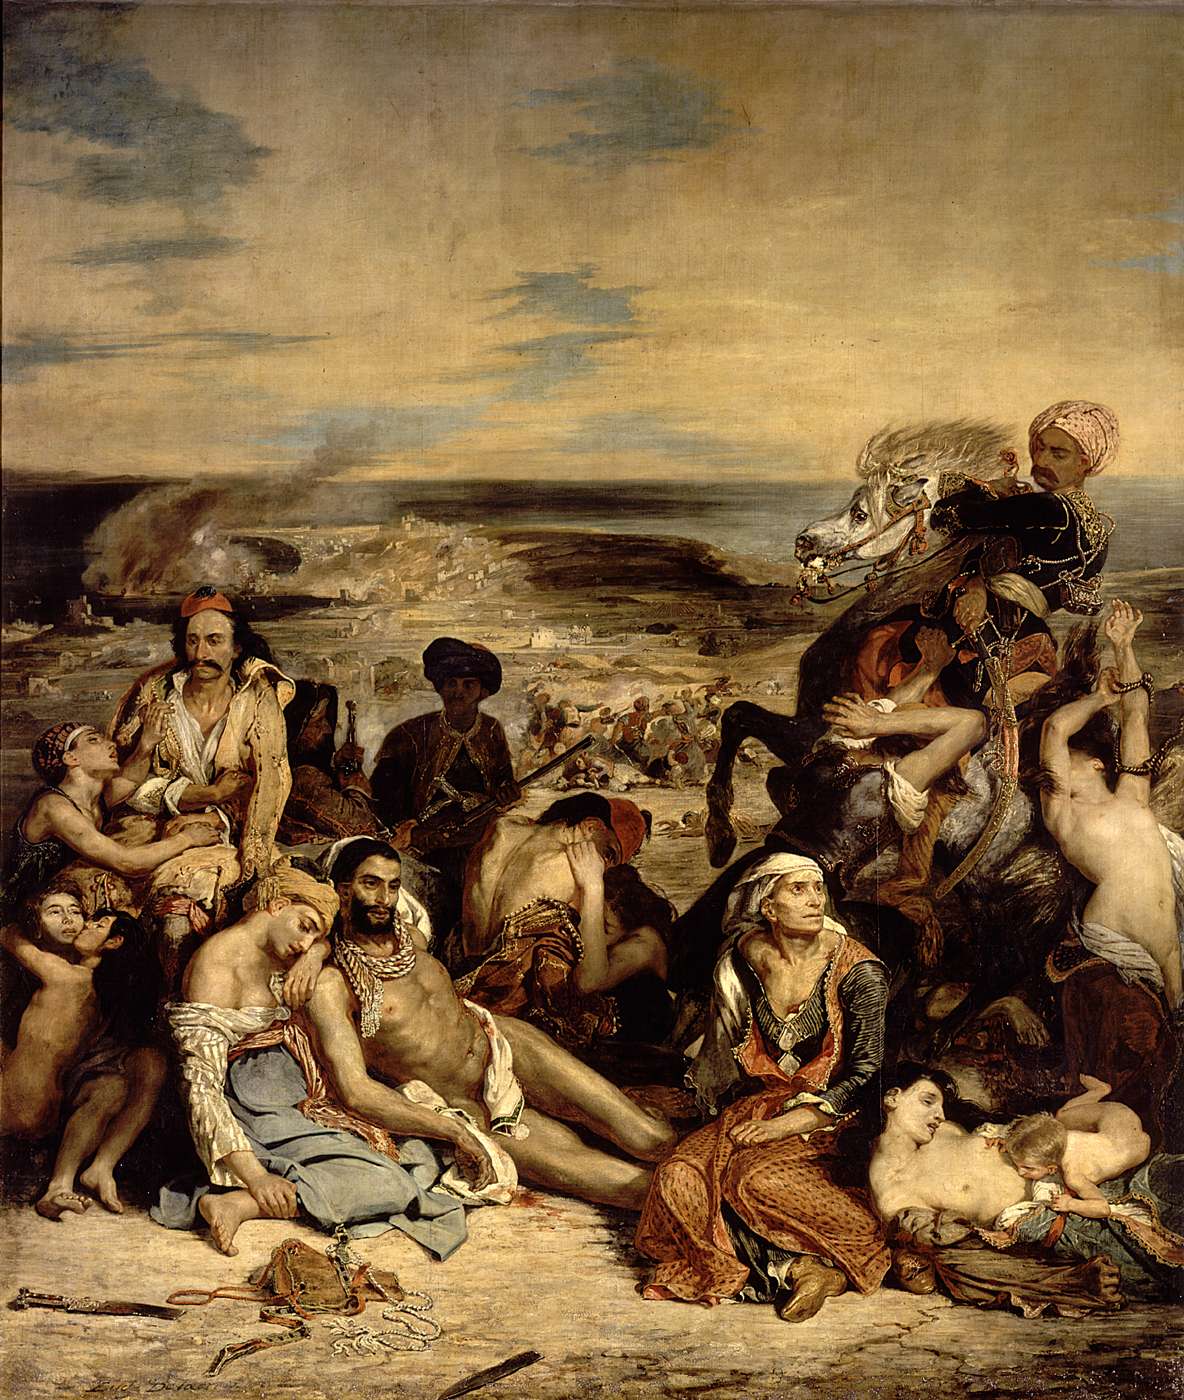 Eugène Delacroix, Massacre at Chios, oil on canvas, 1824, The Louvre 